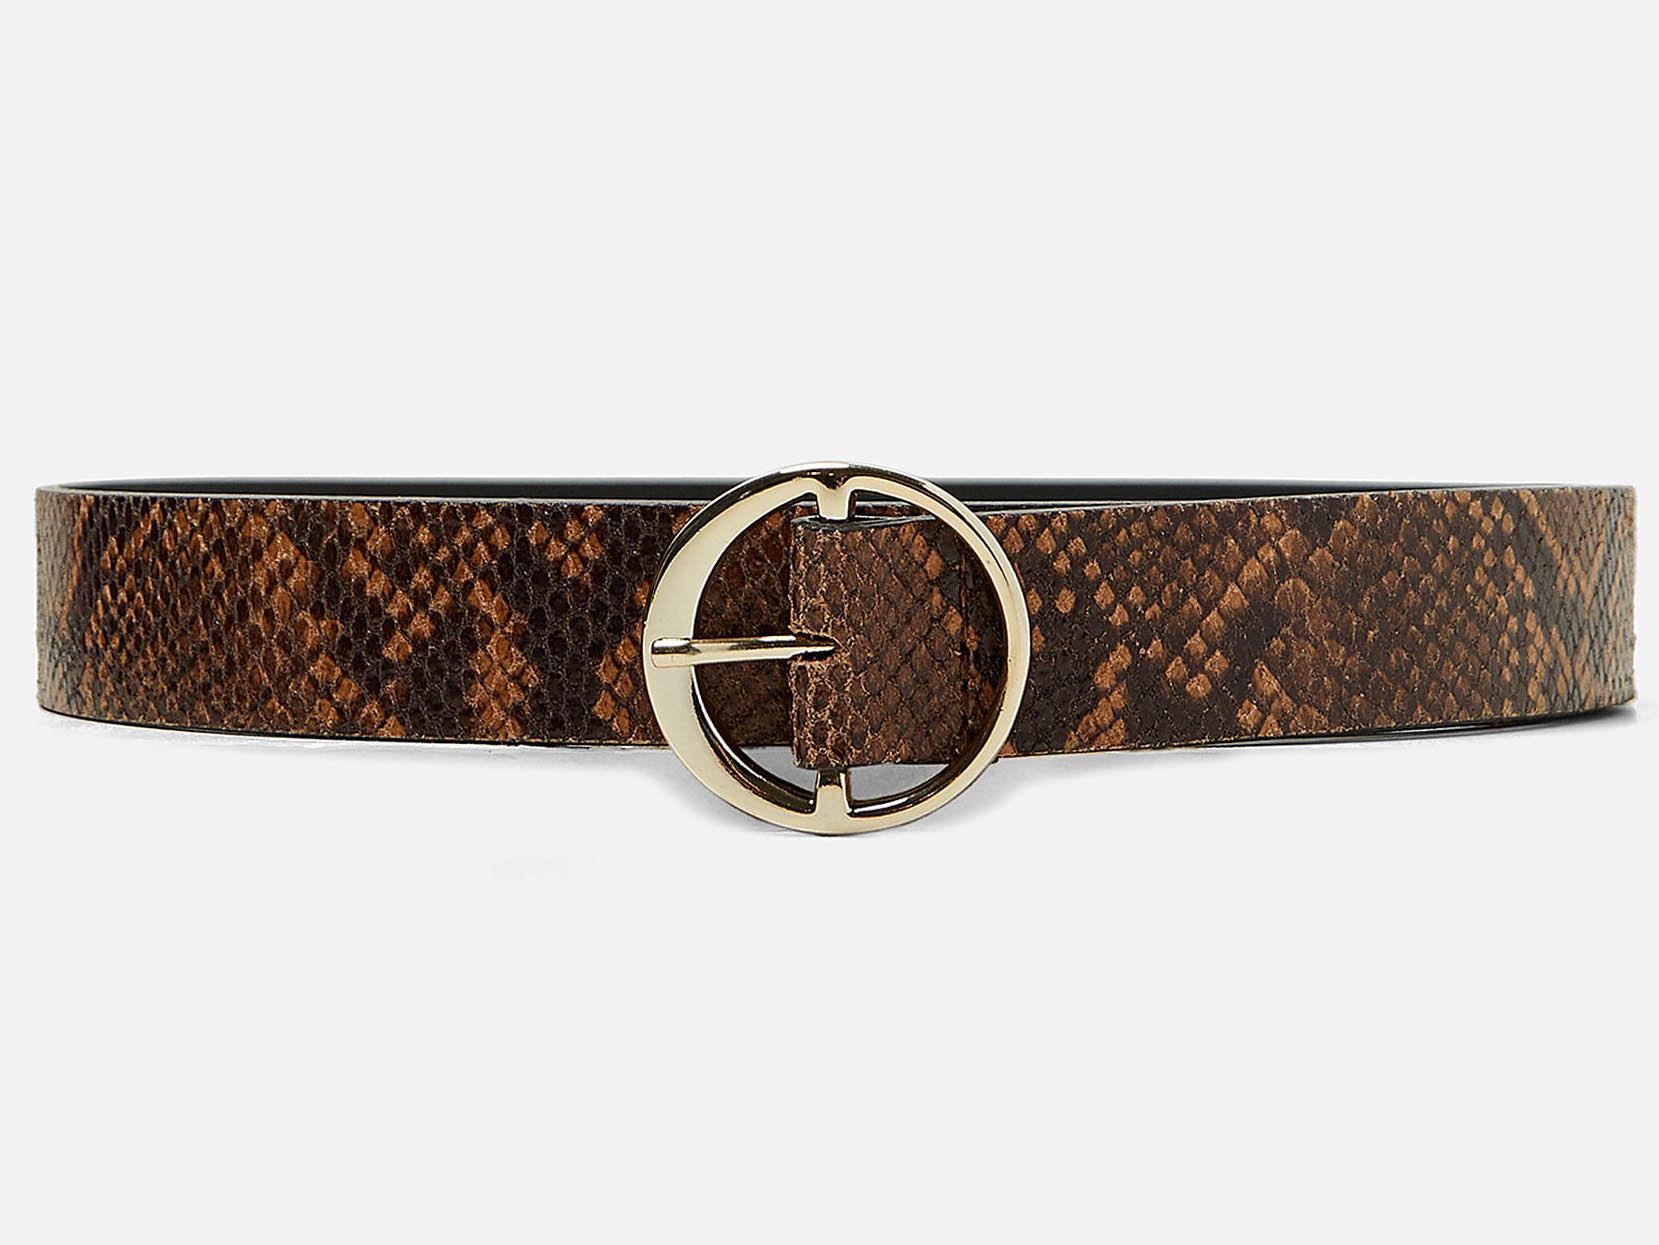 Snakeskin-Effect Leather Belt, £19.99, Zara